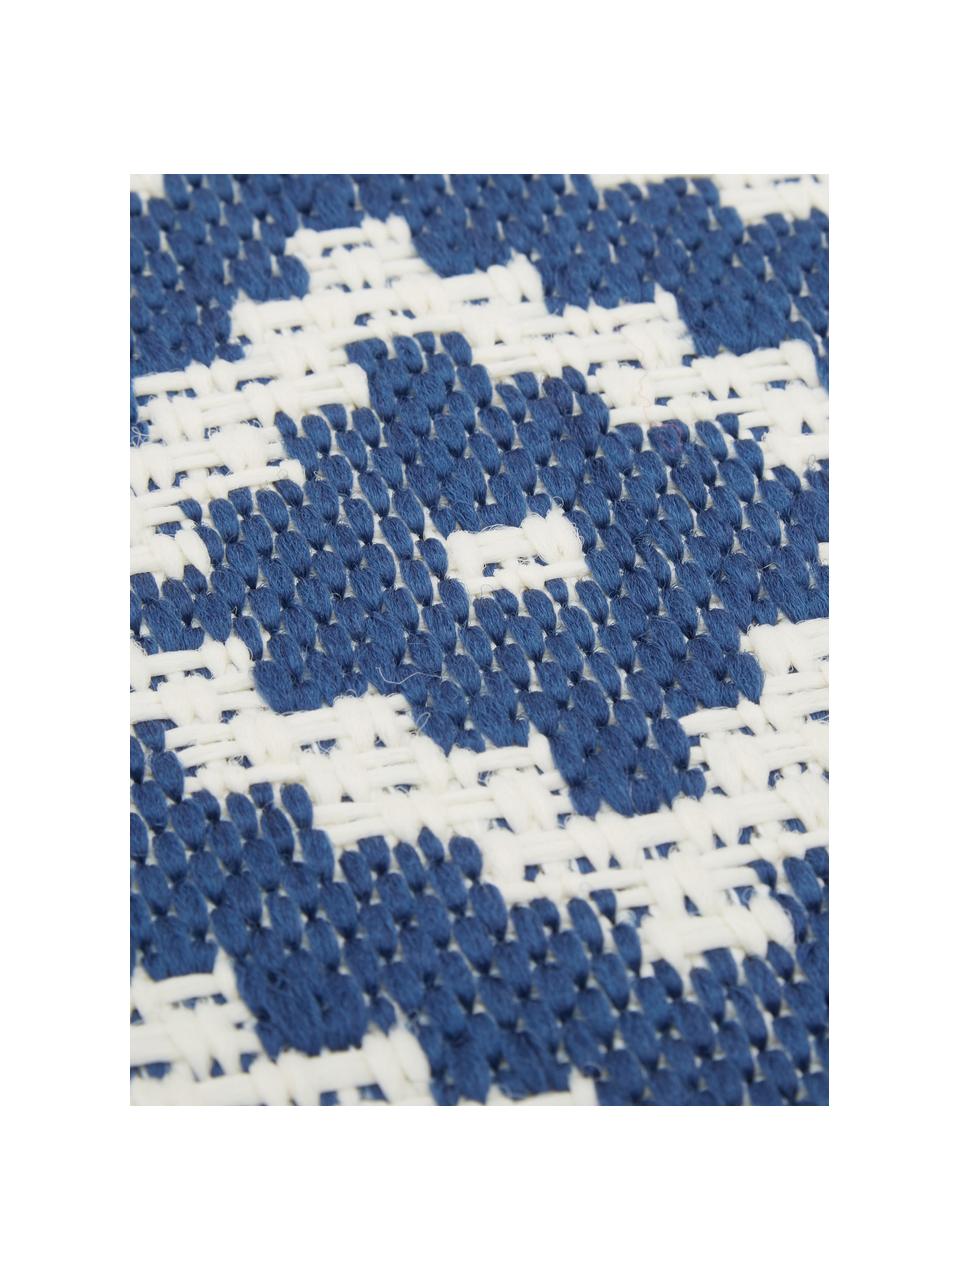 Gemusterter In- & Outdoor-Teppich Miami in Blau/Weiß, 86% Polypropylen, 14% Polyester, Cremeweiß, Blau, B 160 x L 230 cm (Größe M)